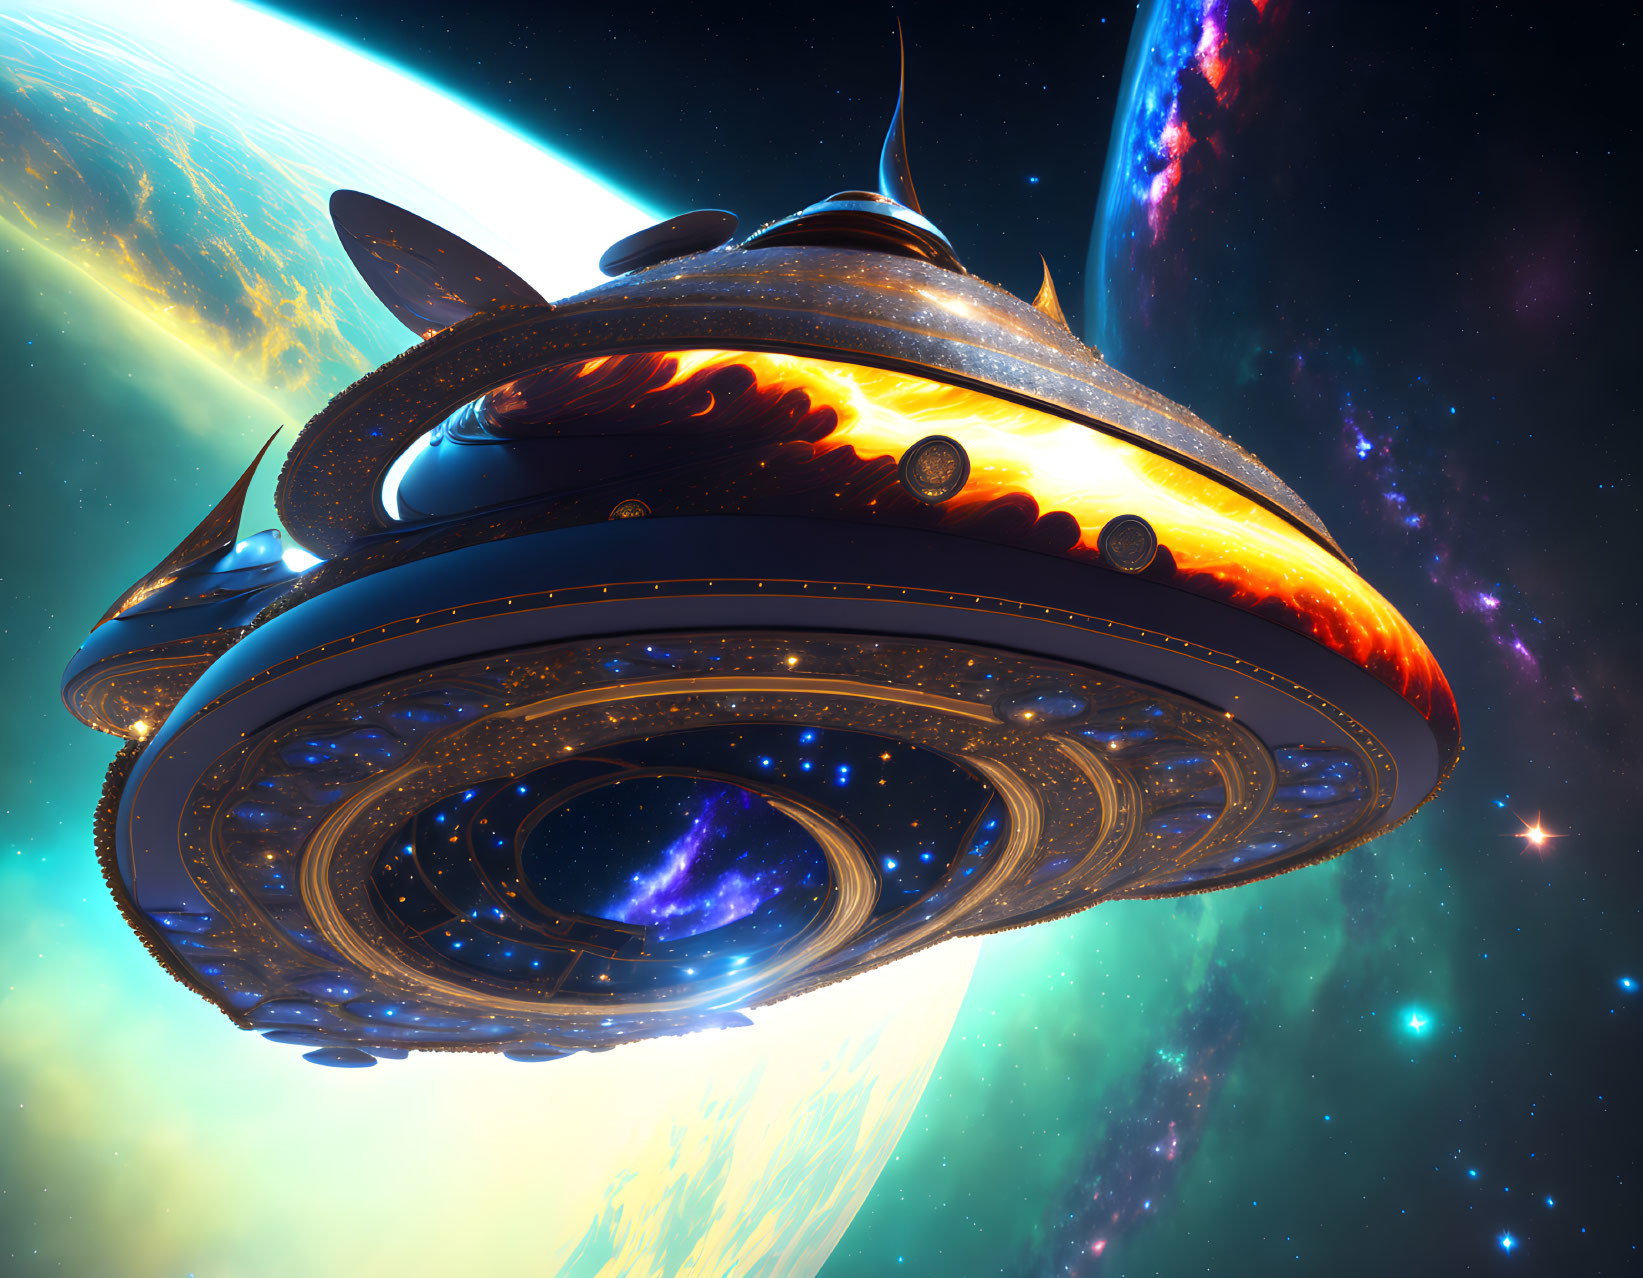 Elaborate futuristic spaceship in vibrant cosmic scene